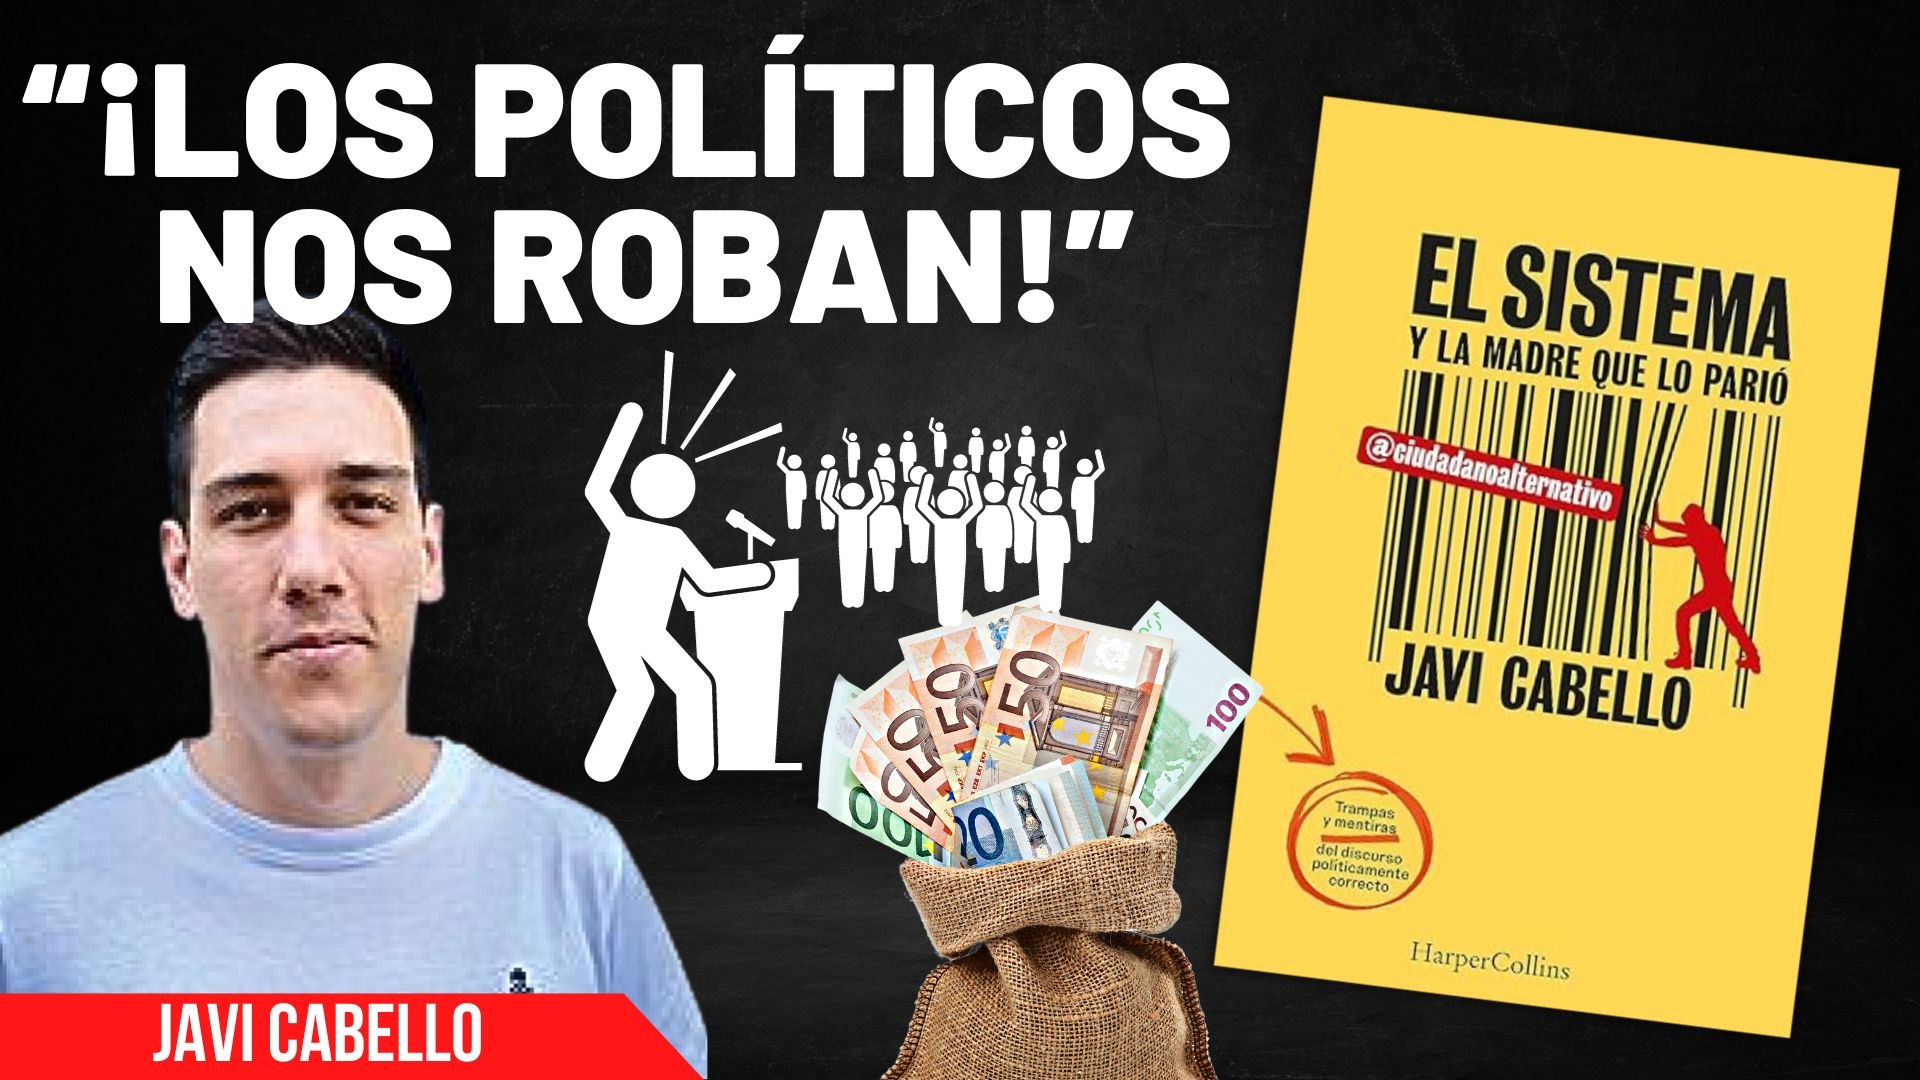 Javi Cabello: “¡Los políticos nos están robando!” - Vídeo Dailymotion